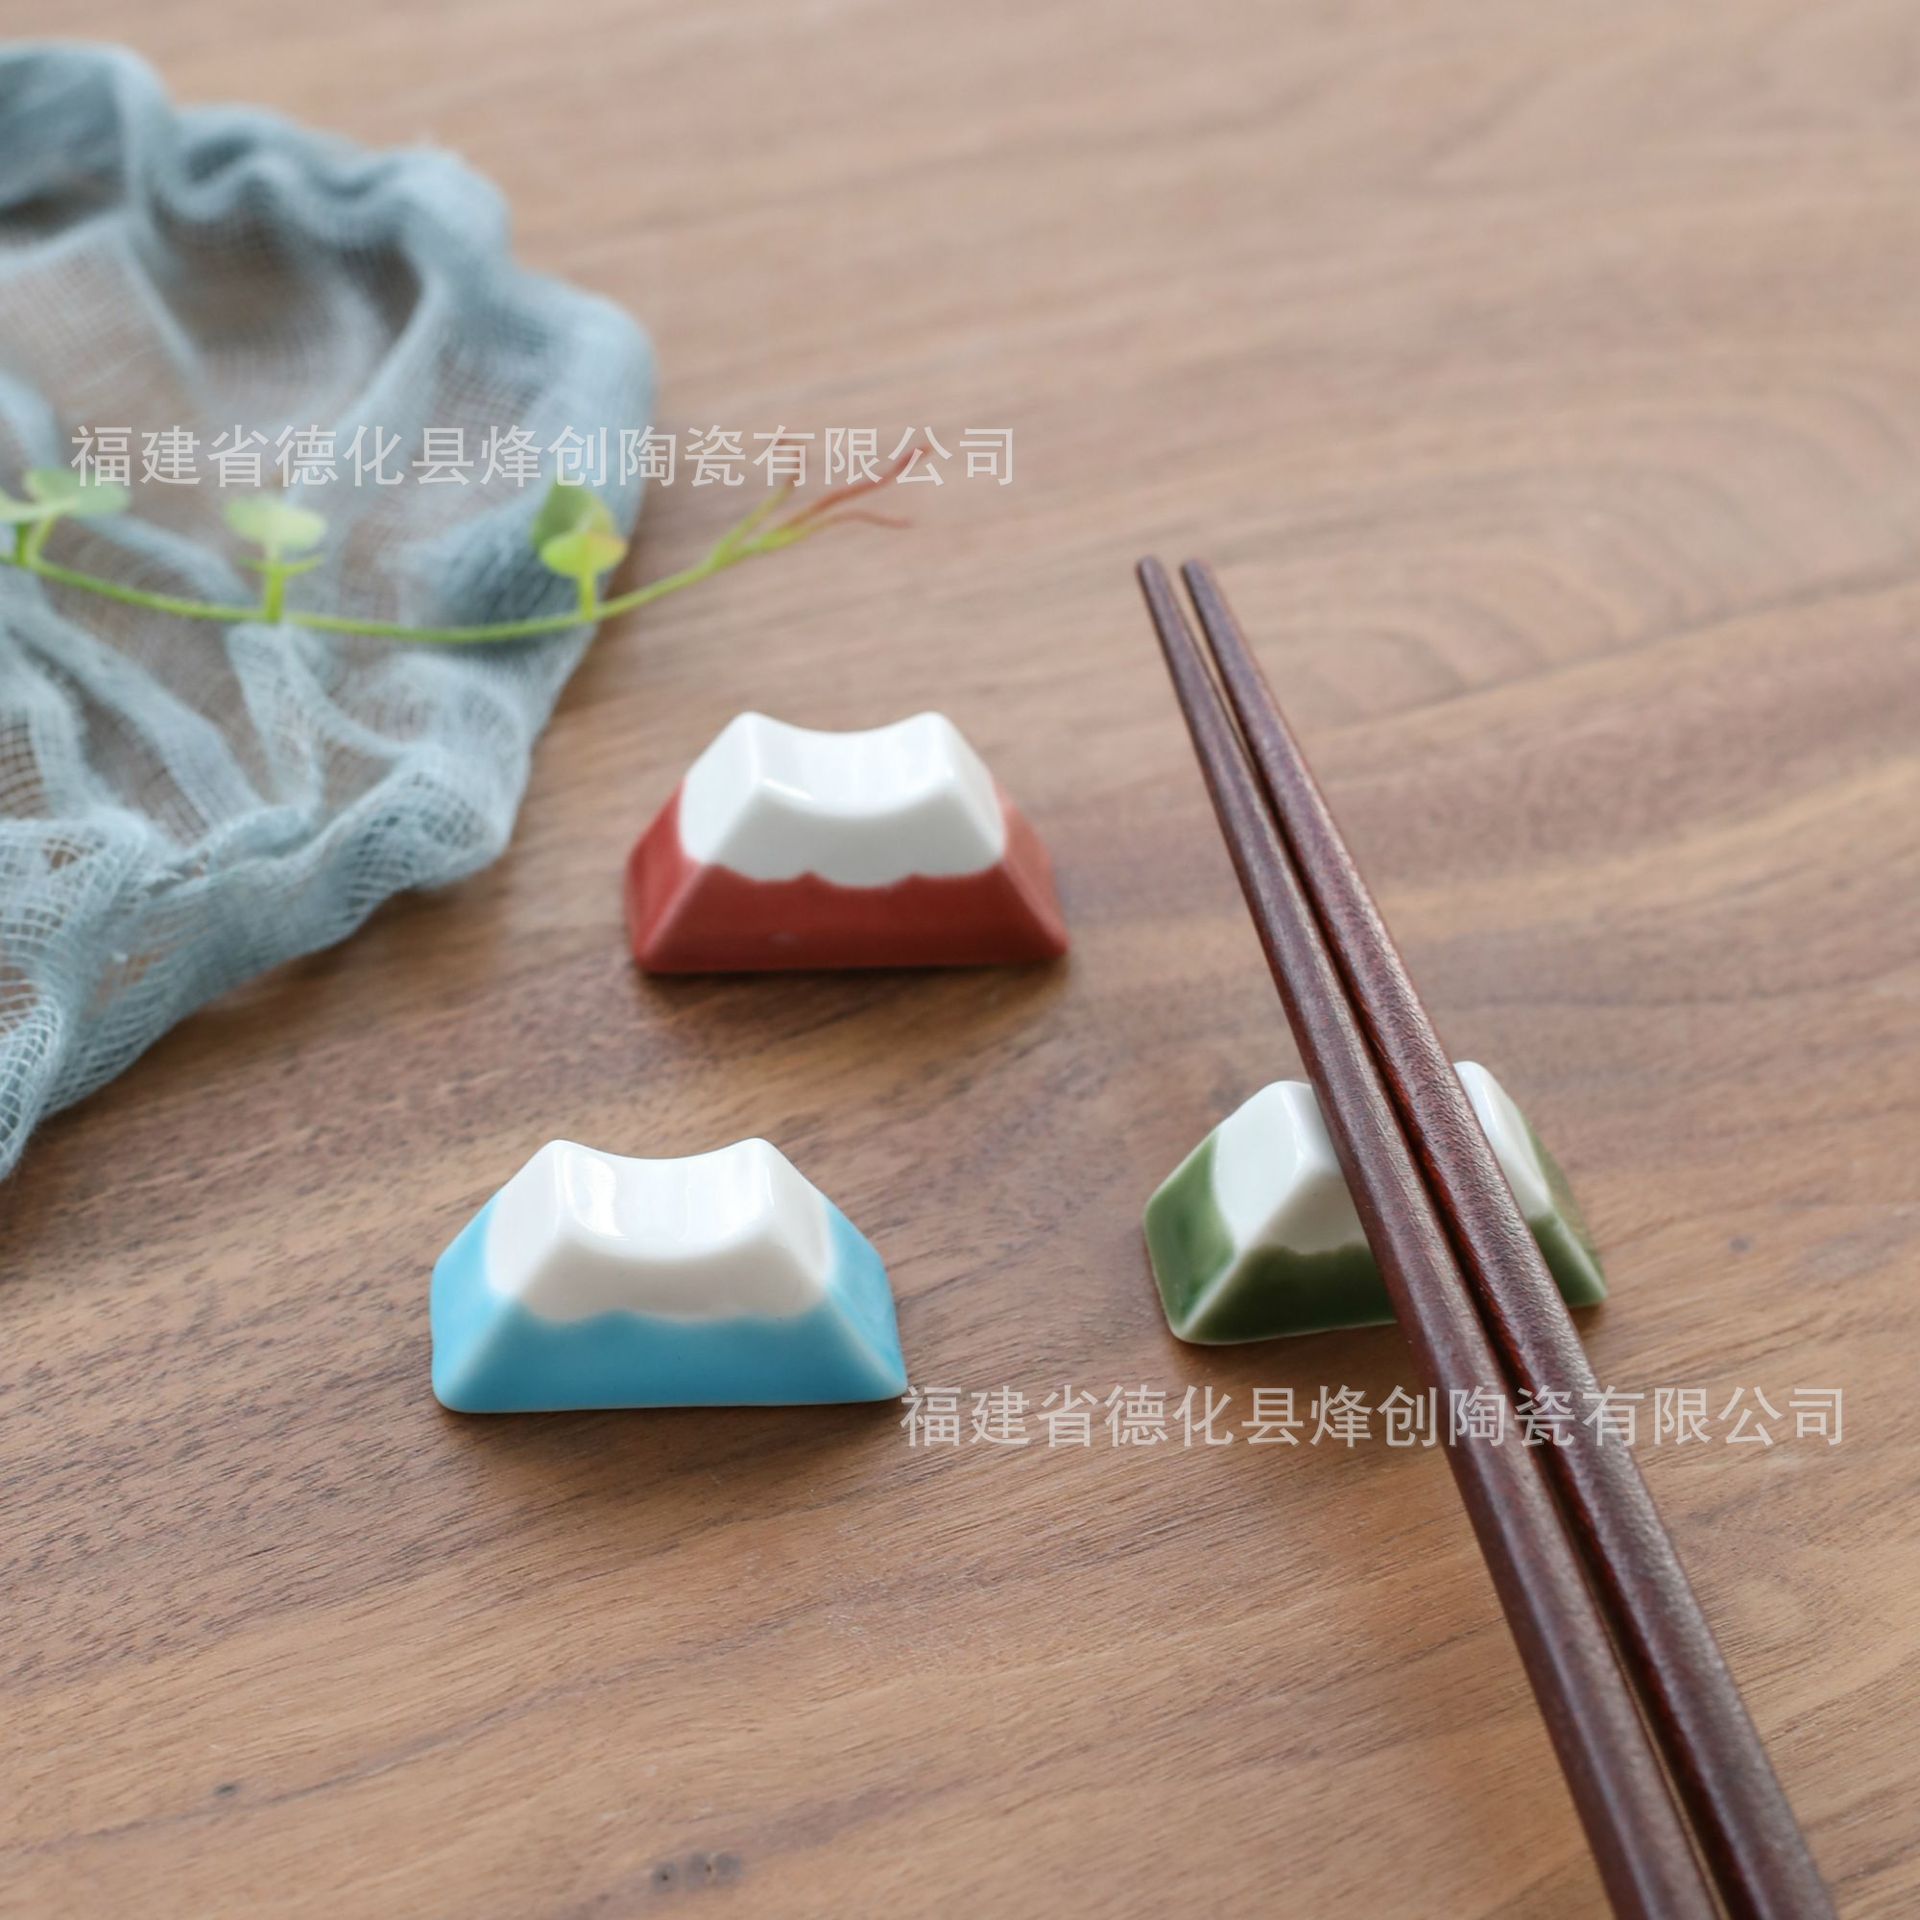 文创Zakka创意家居 日式杂货 日本富士山陶瓷筷子架 家居日用摆件